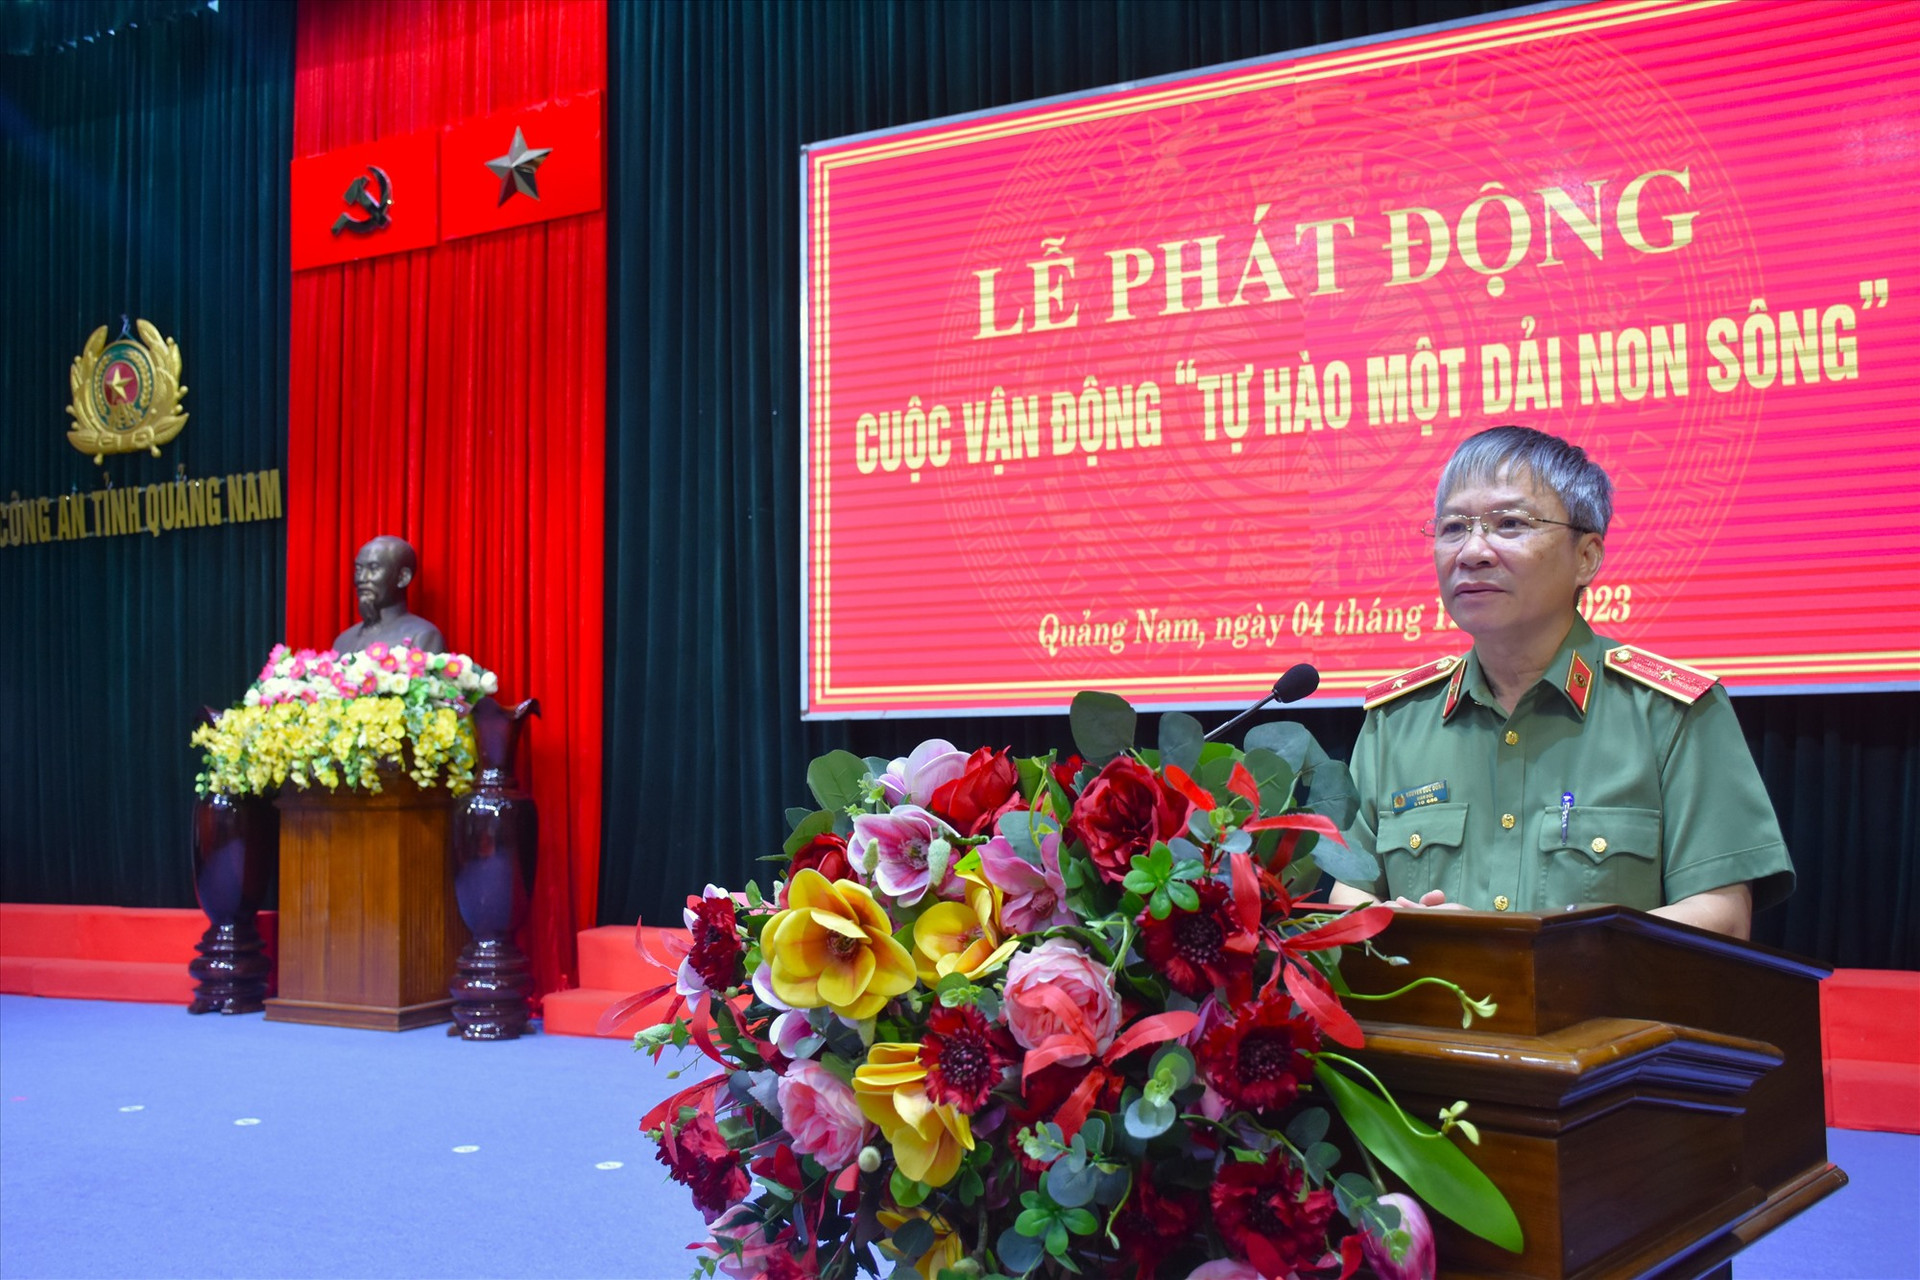 Thiếu tướng Nguyễn Đức Dũng - Giám đốc Công an tỉnh Quảng Nam phát động cuộc vận động “Tự hào một dải non sông”